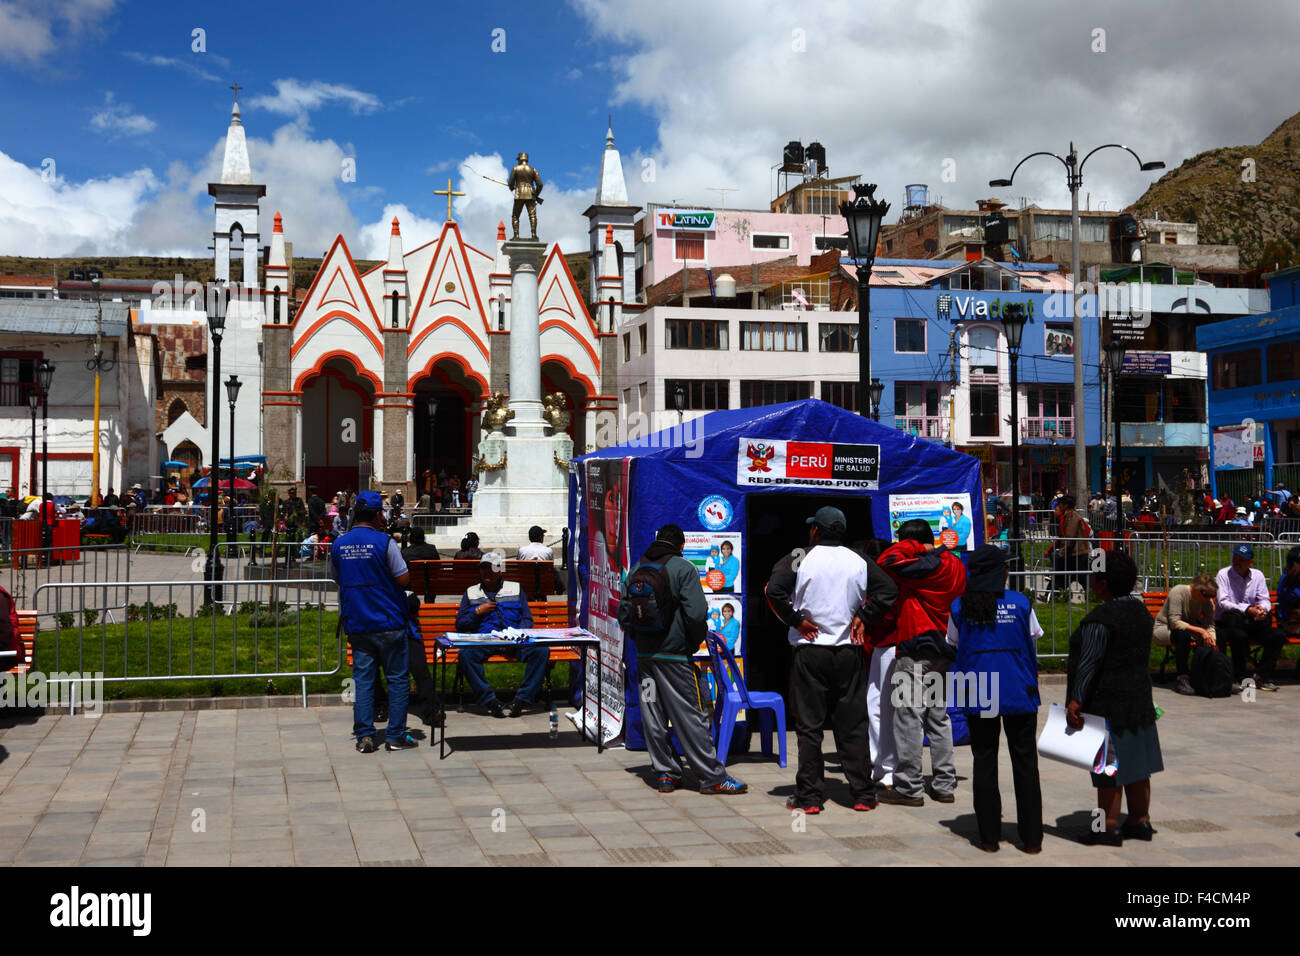 Service de santé temporaire clinique en tente, sanctuaire Virgen de la Candelaria en arrière-plan, la place de Pino, Puno, Pérou Banque D'Images